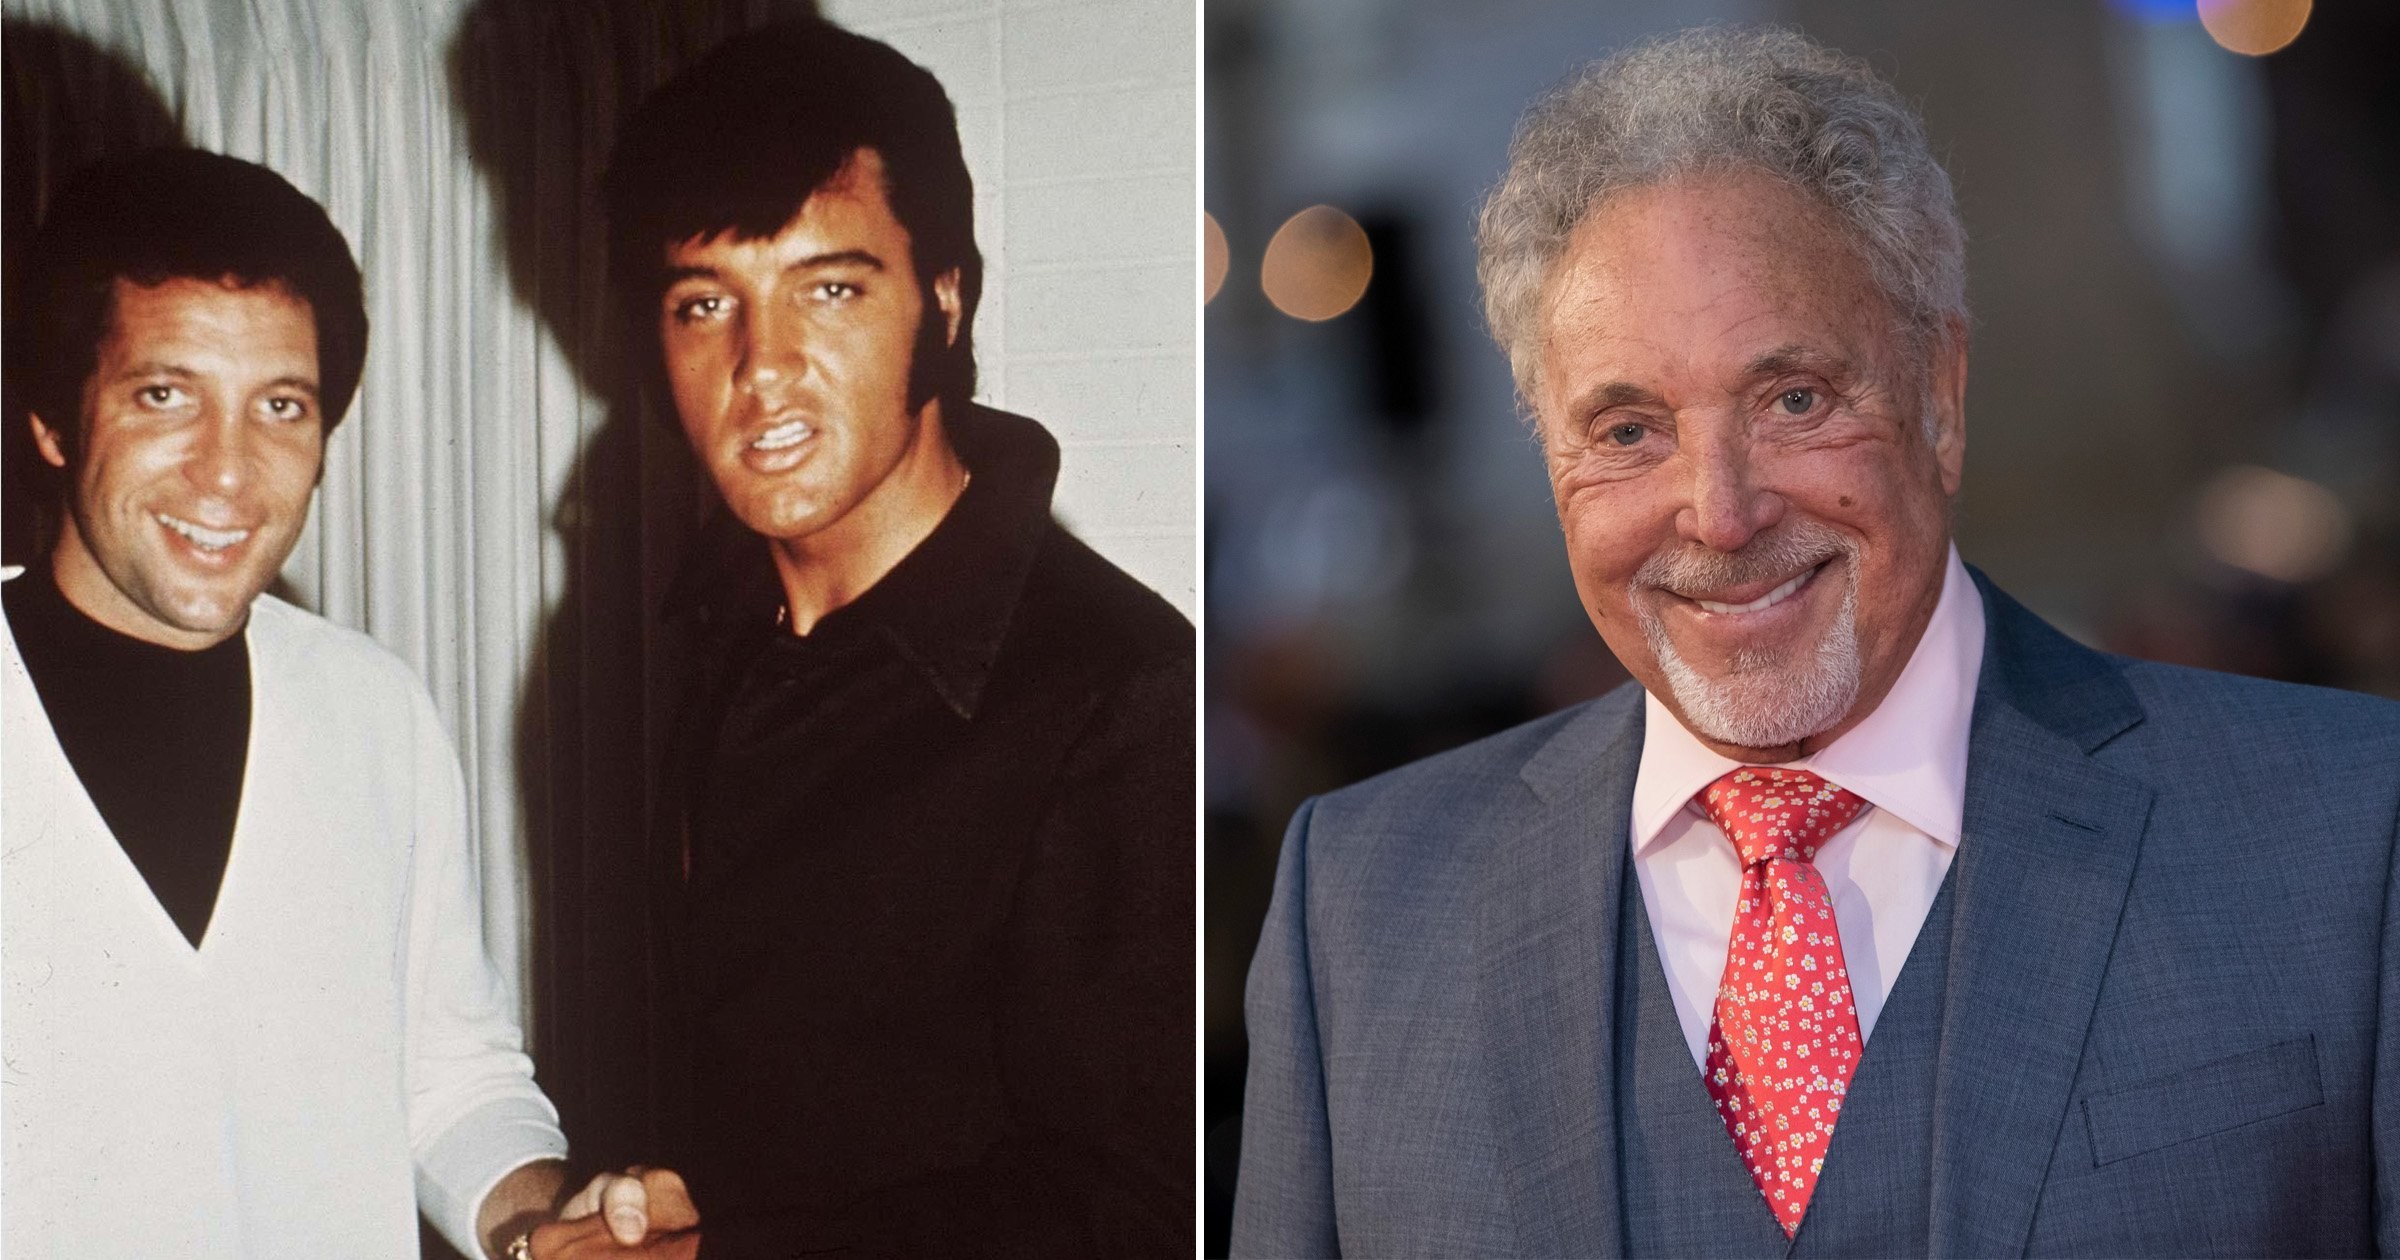 True story of how The Voice UK coach Sir Tom Jones met idol and friend Elvis Presley